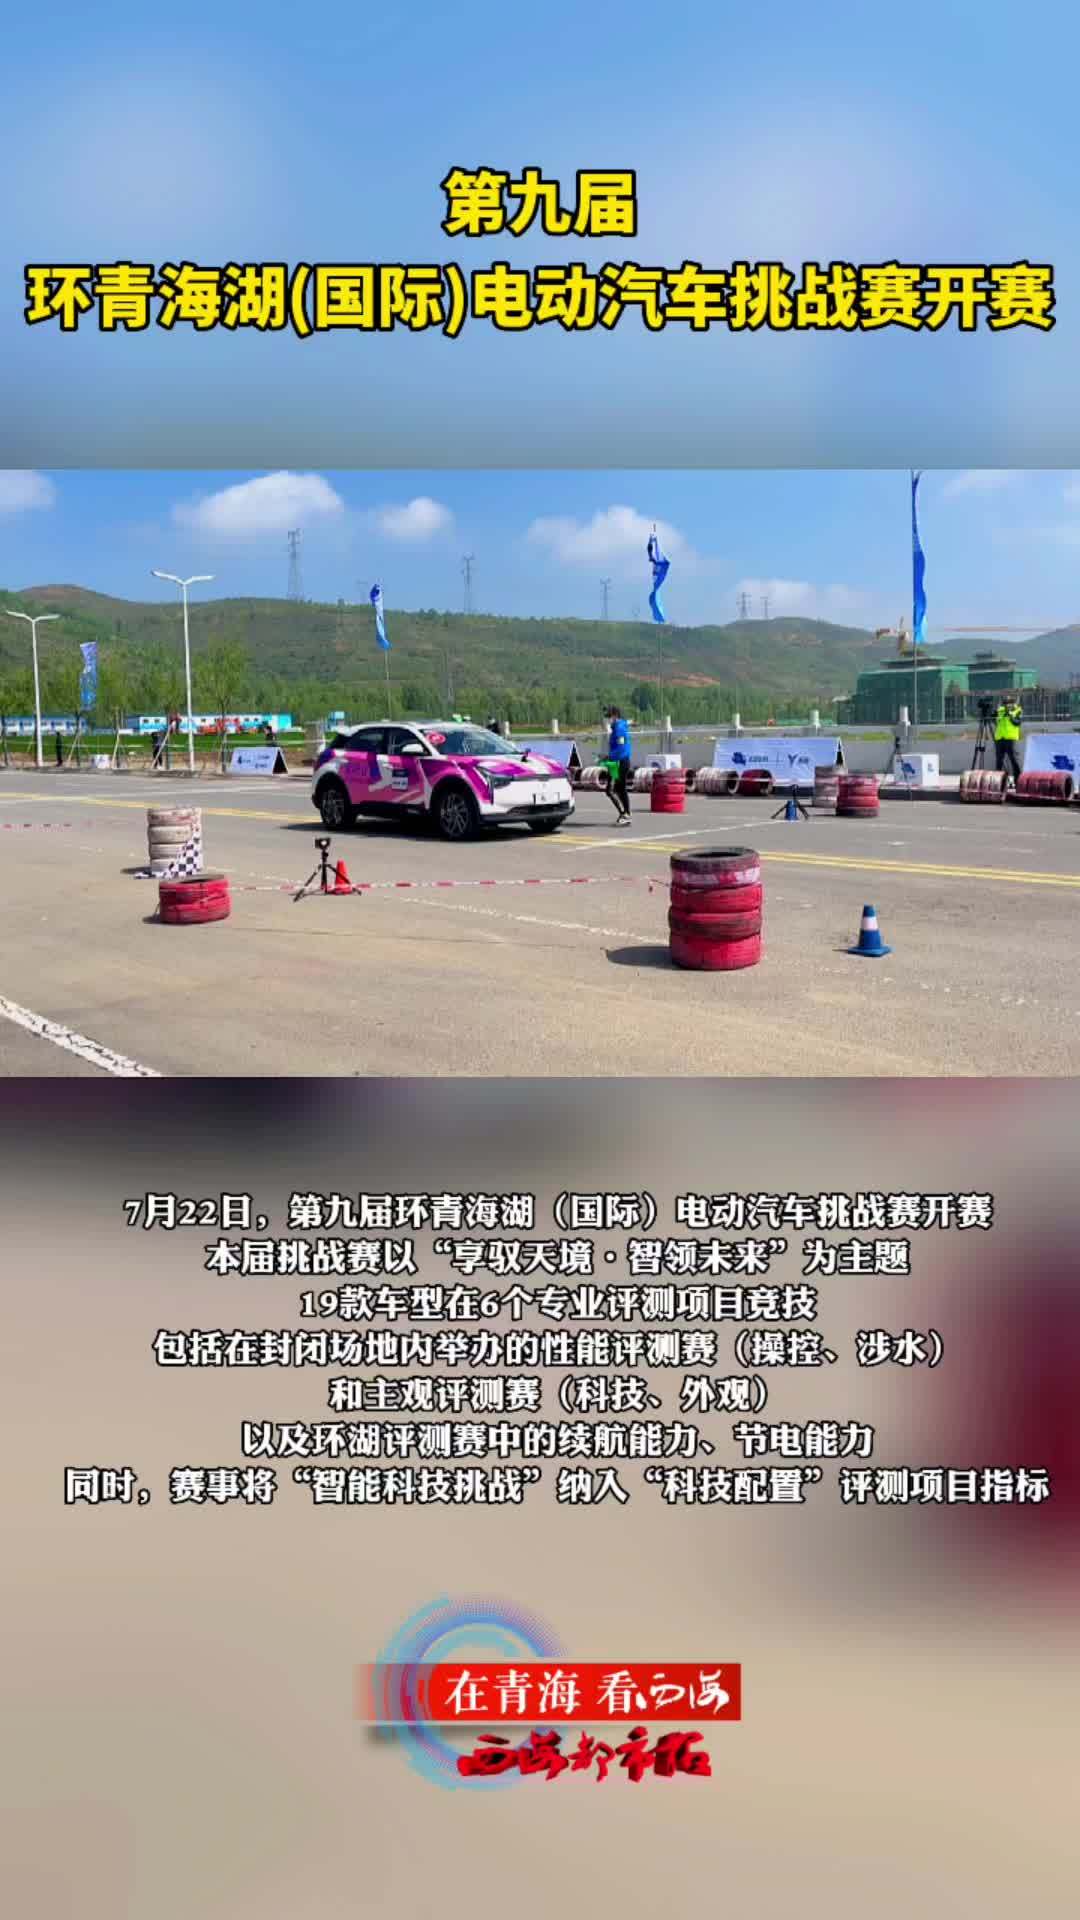 环青海湖电动汽车挑战赛